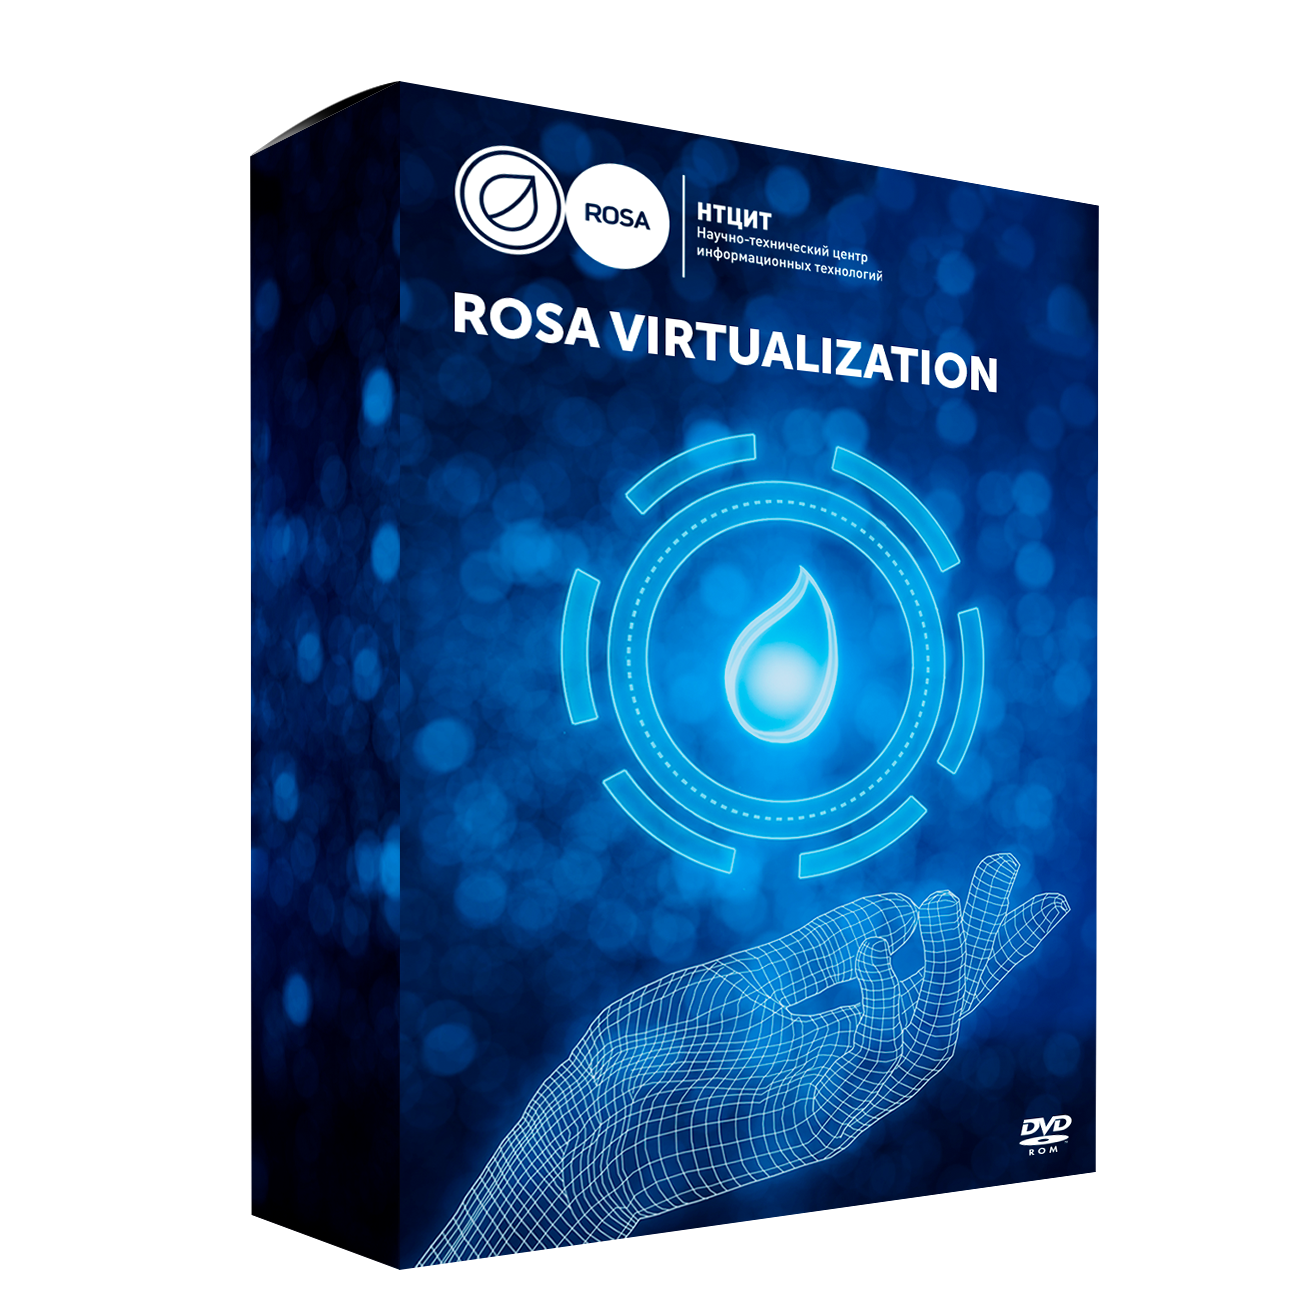 Сертификат продления стандартной технической поддержки для системы виртуализации ROSA Virtualization (50VM), сроком 1 год